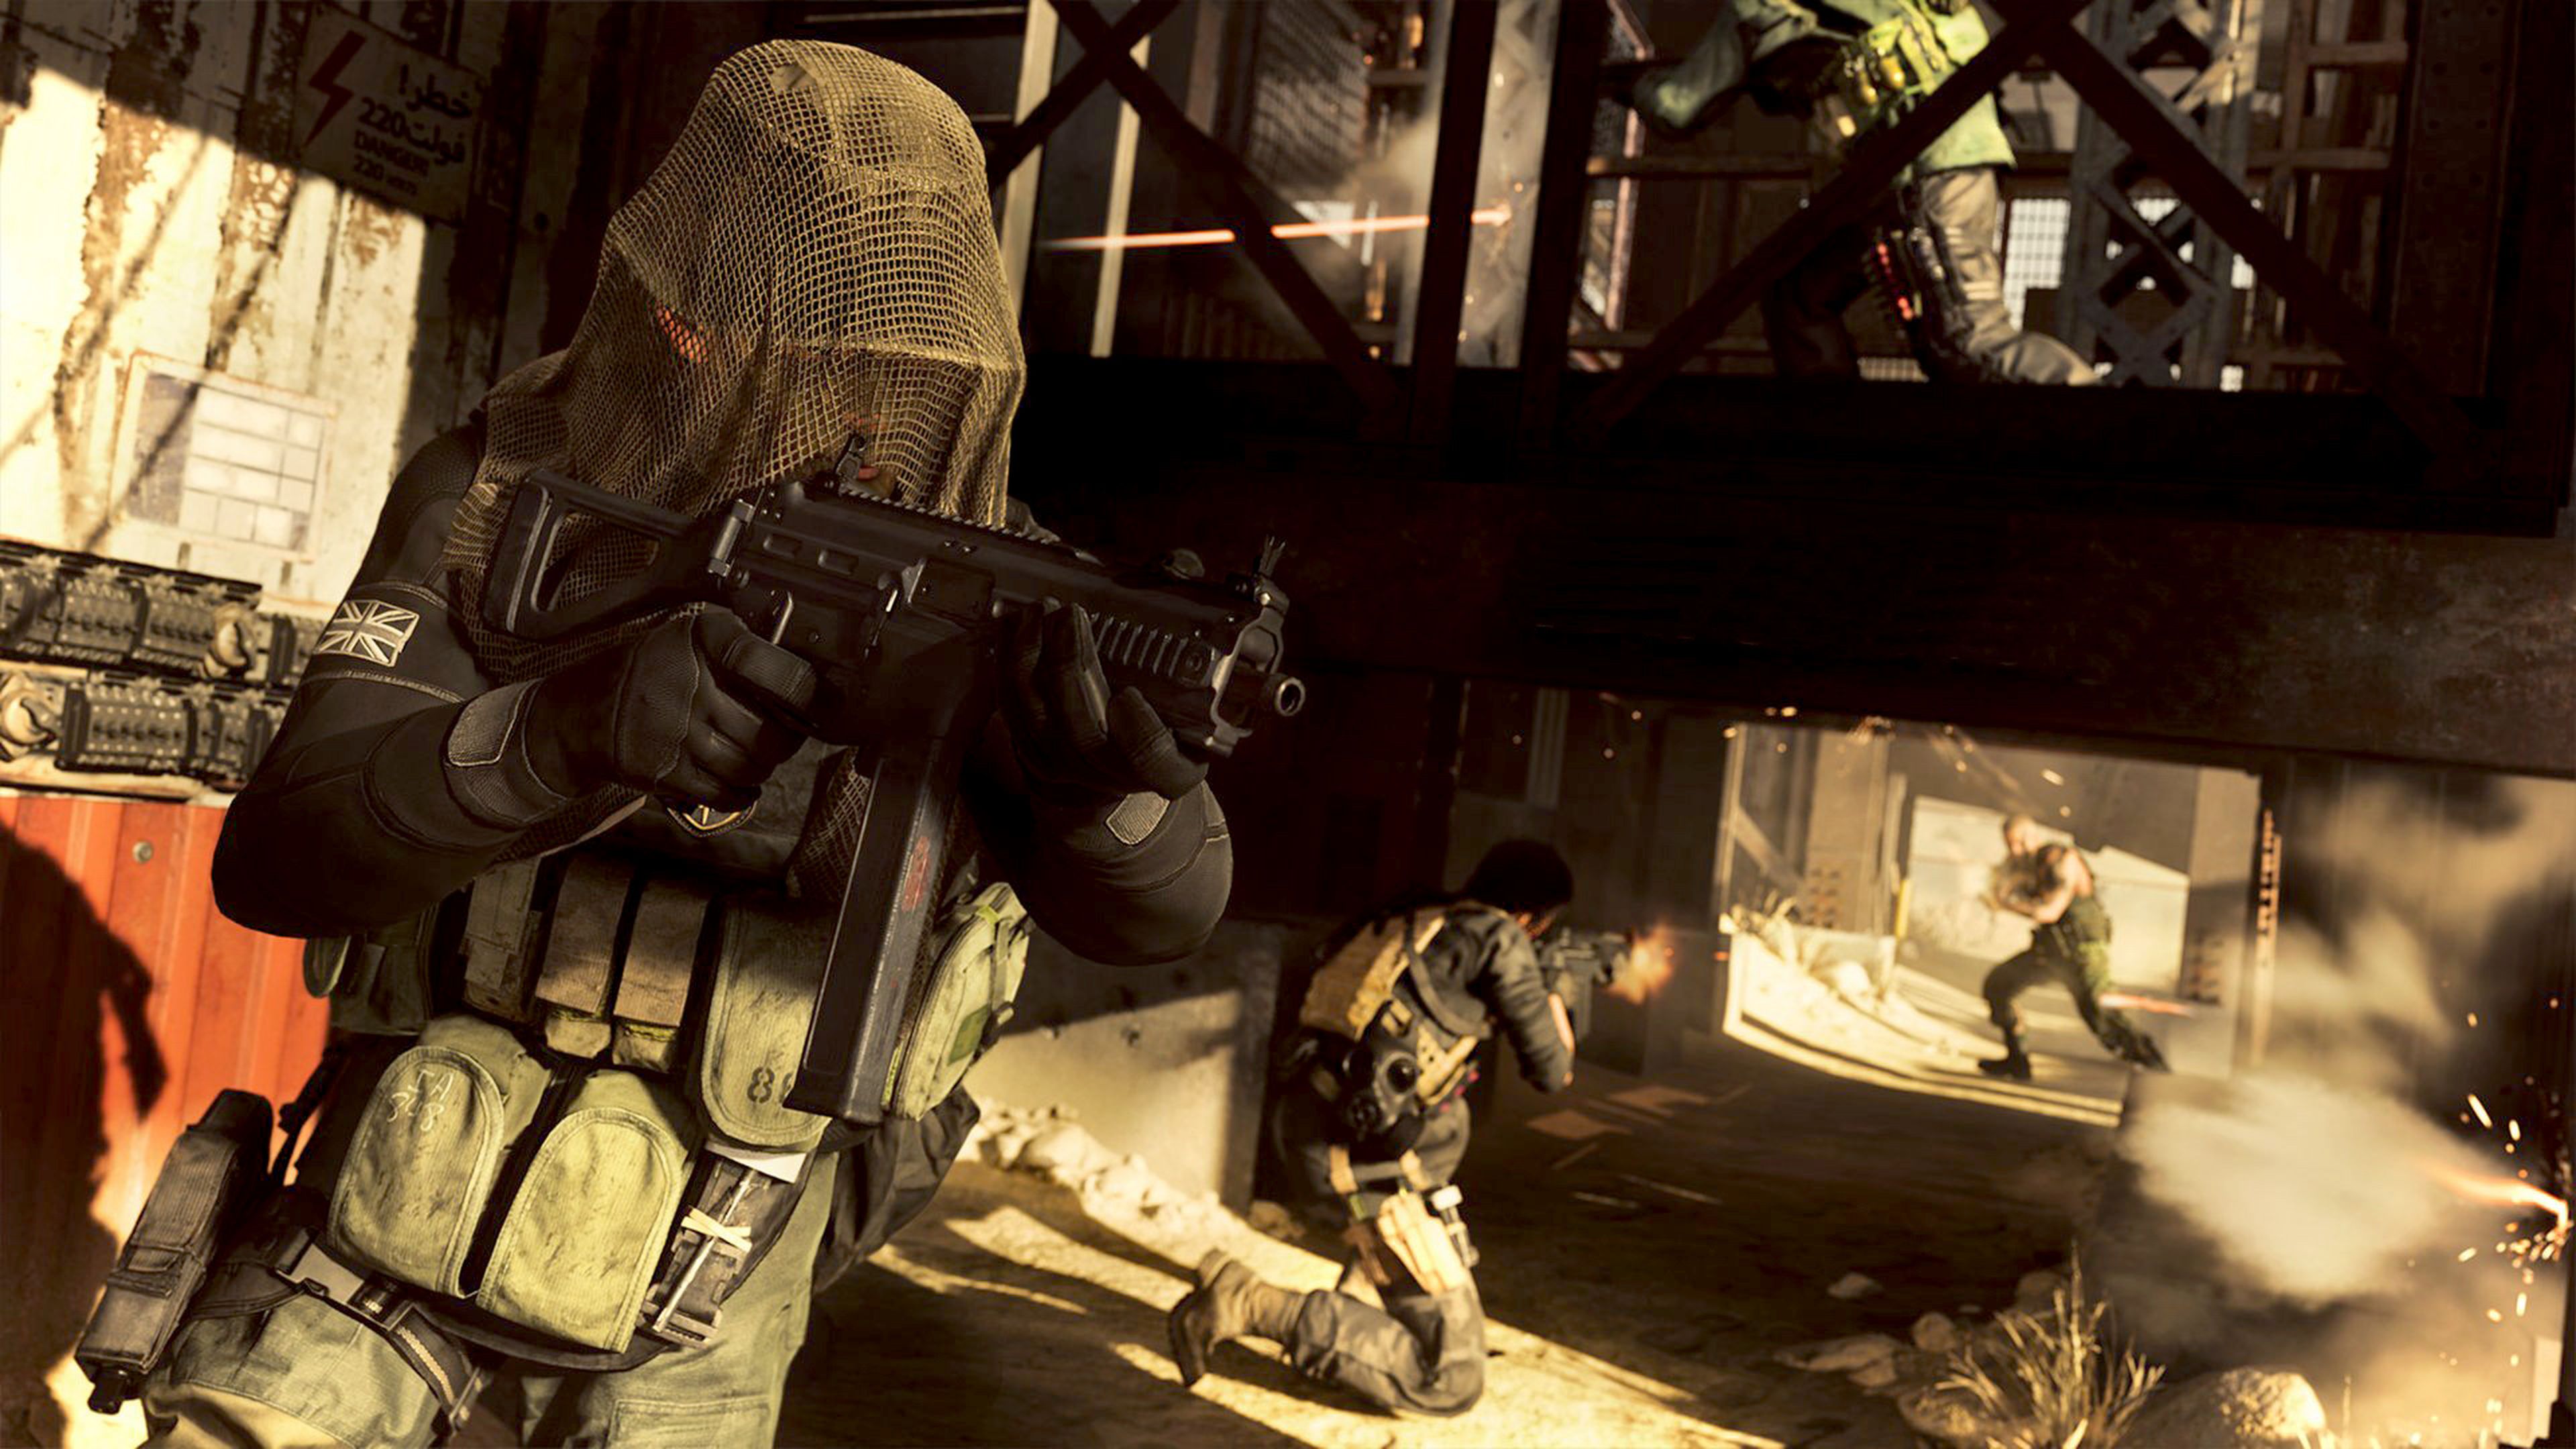 Actualización 1.22 Call of Duty Modern Warfare y Warzone